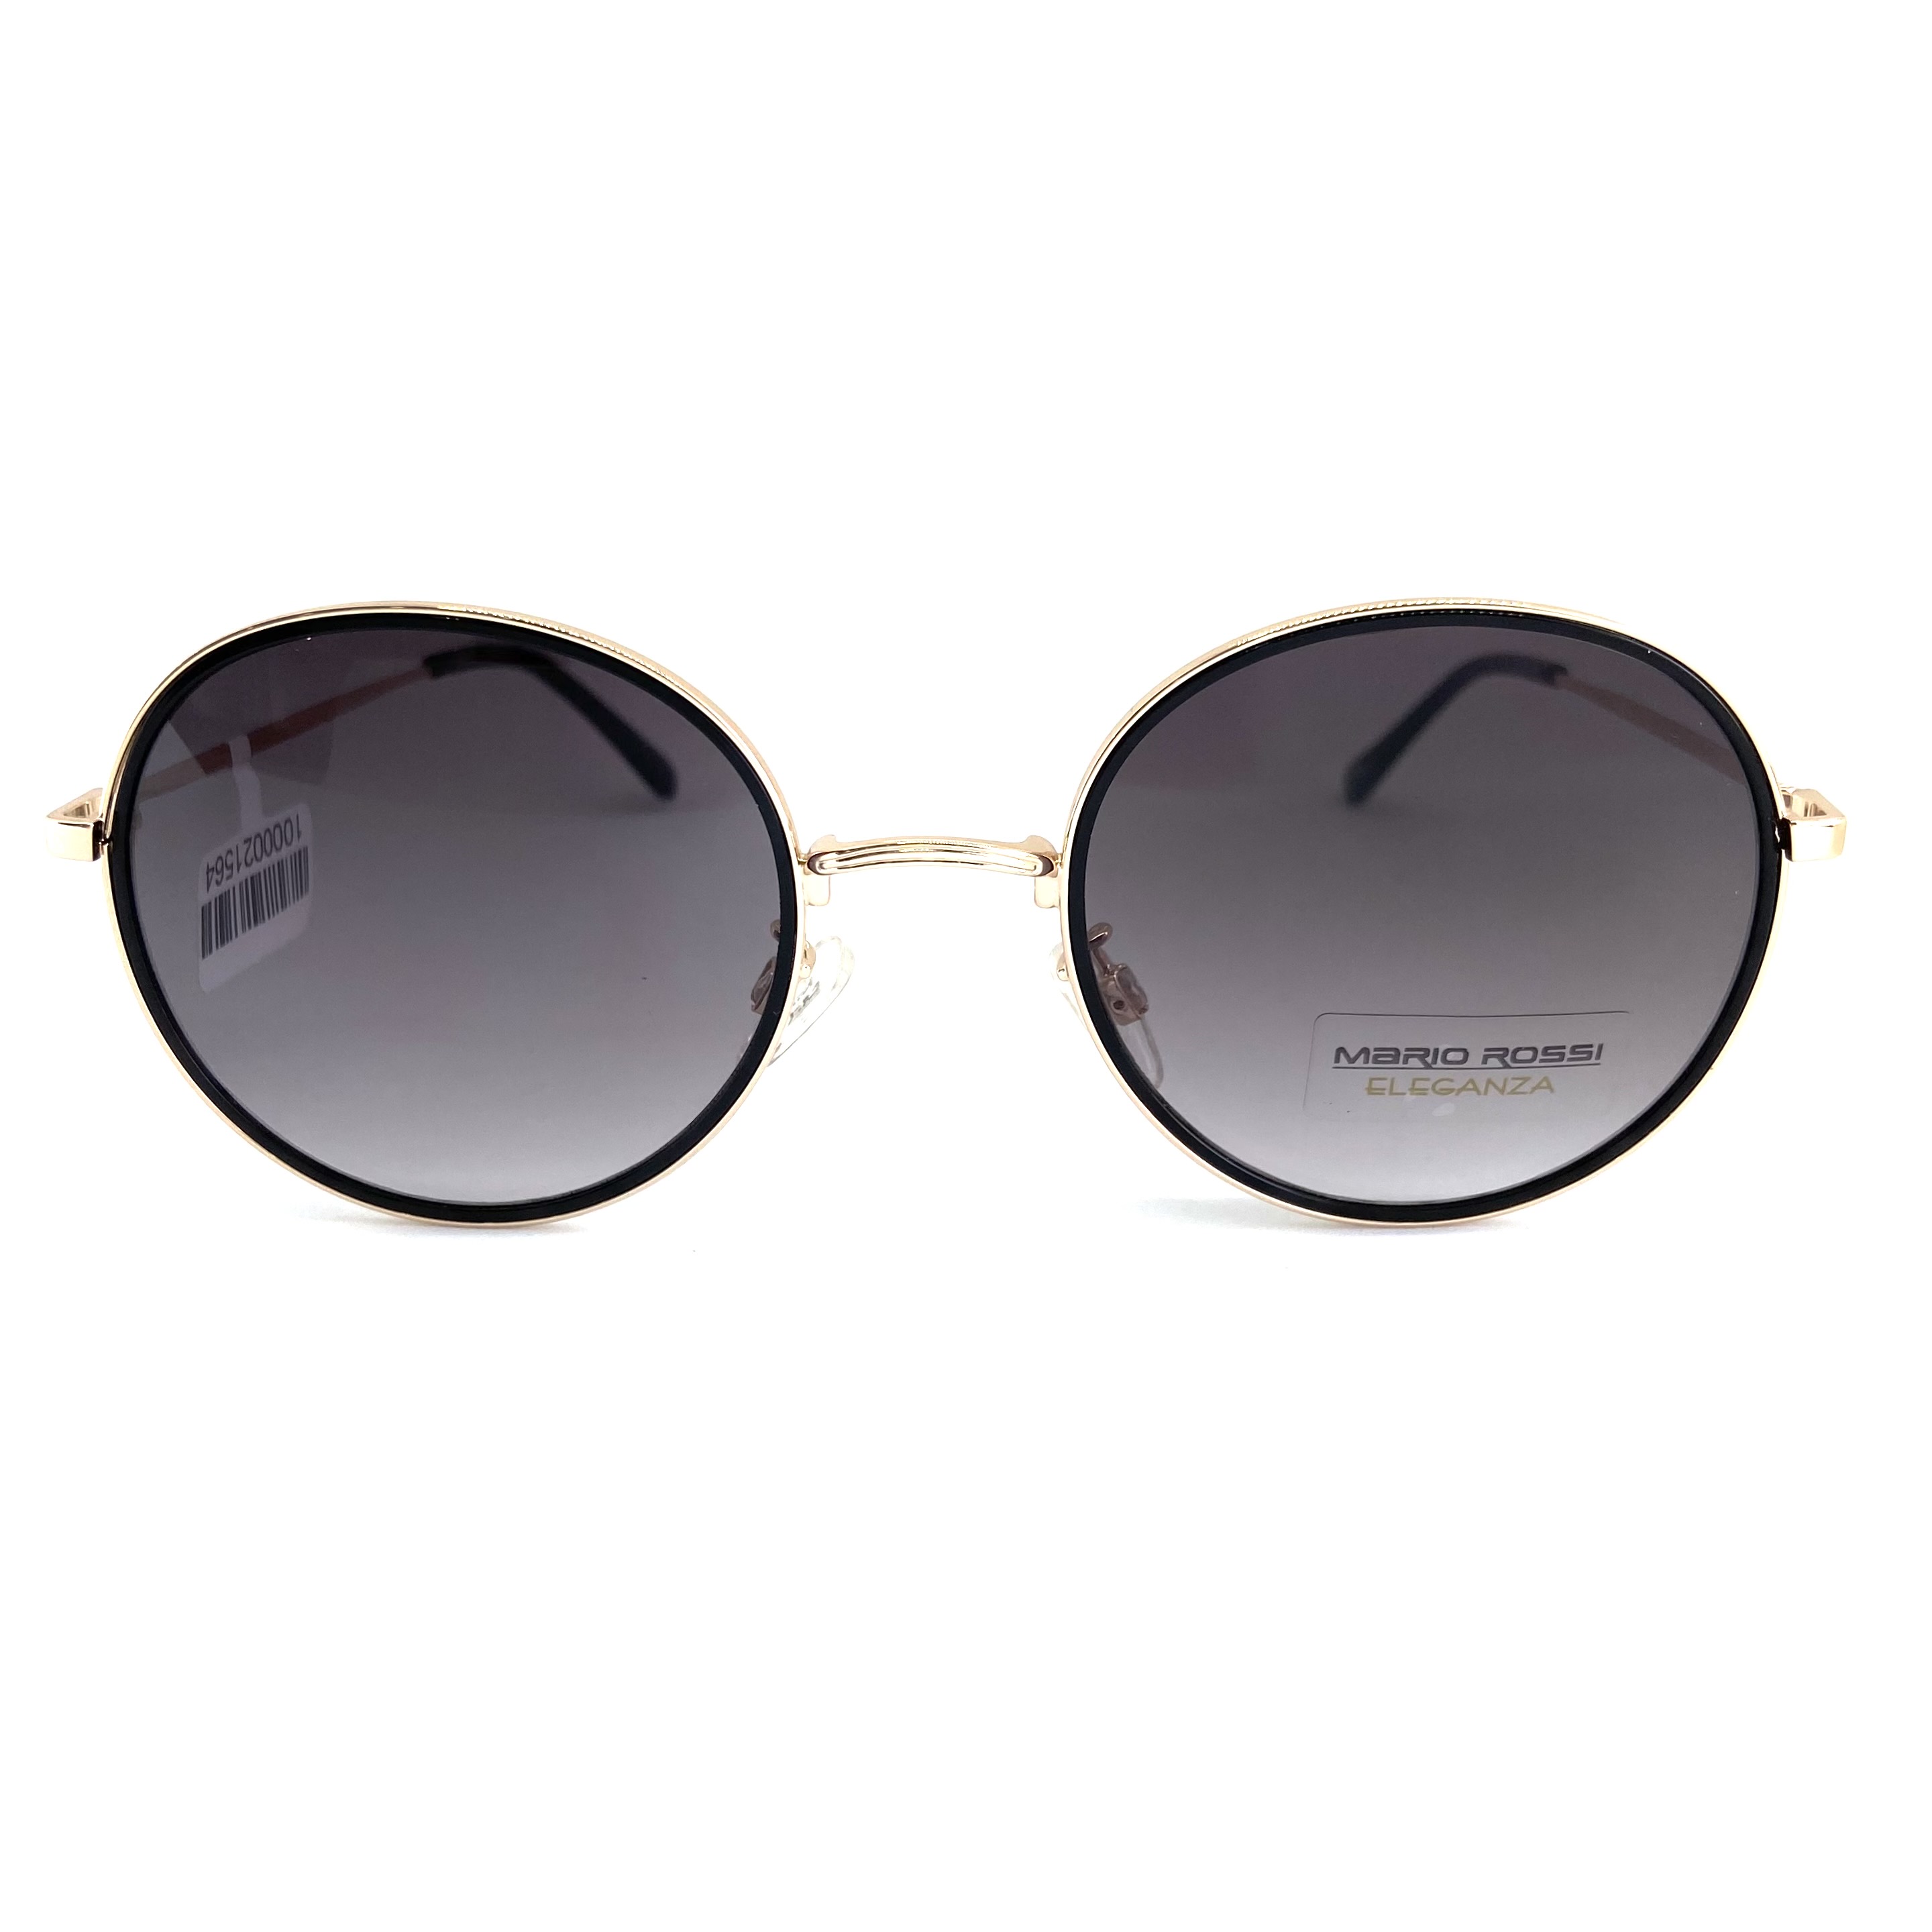 Солнцезащитные очки Mario Rossi модель 01 468                        